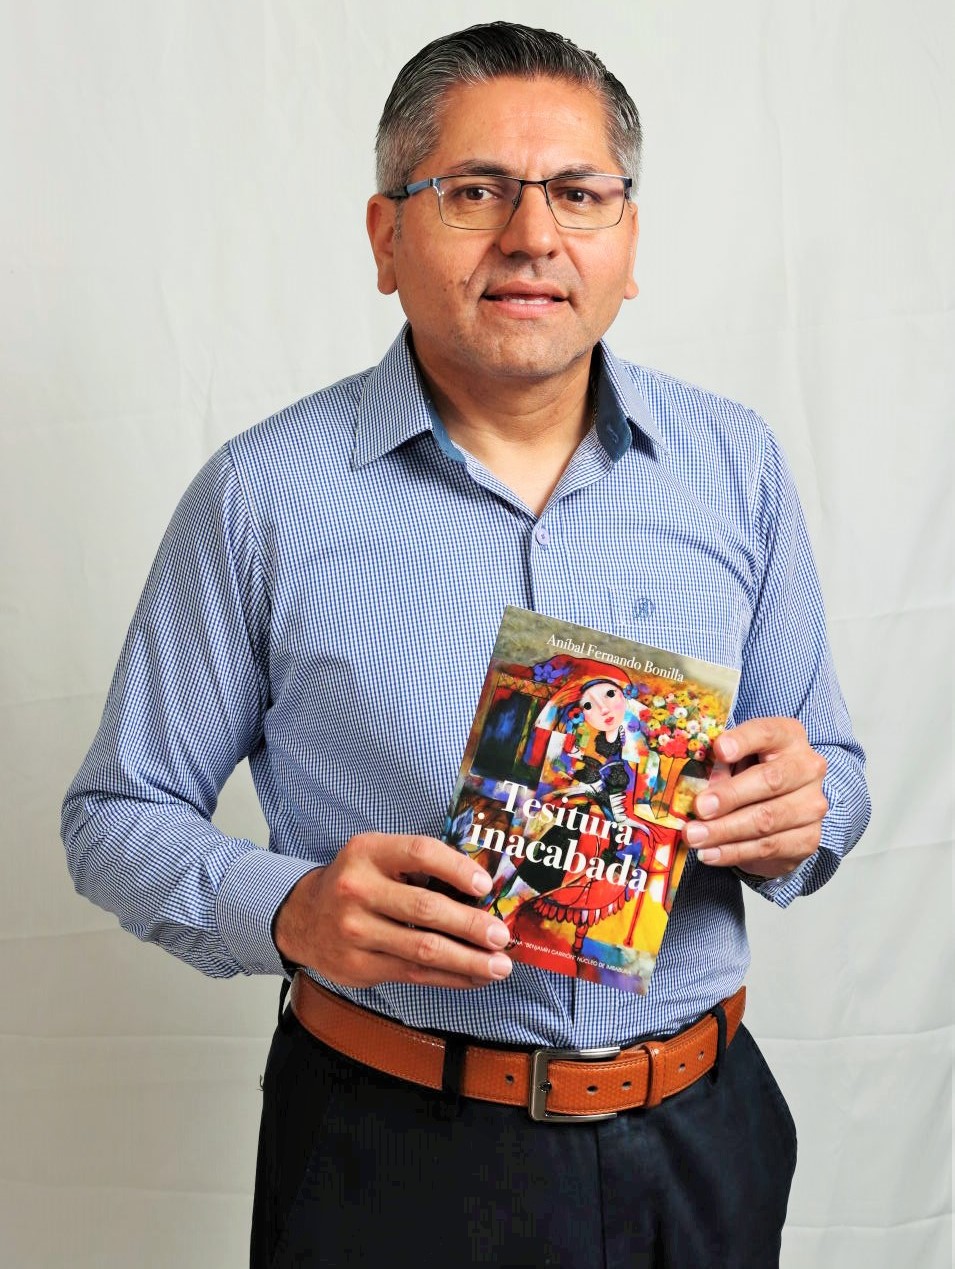 «Tesitura inacabada». Un libro de Aníbal Fernando Bonilla